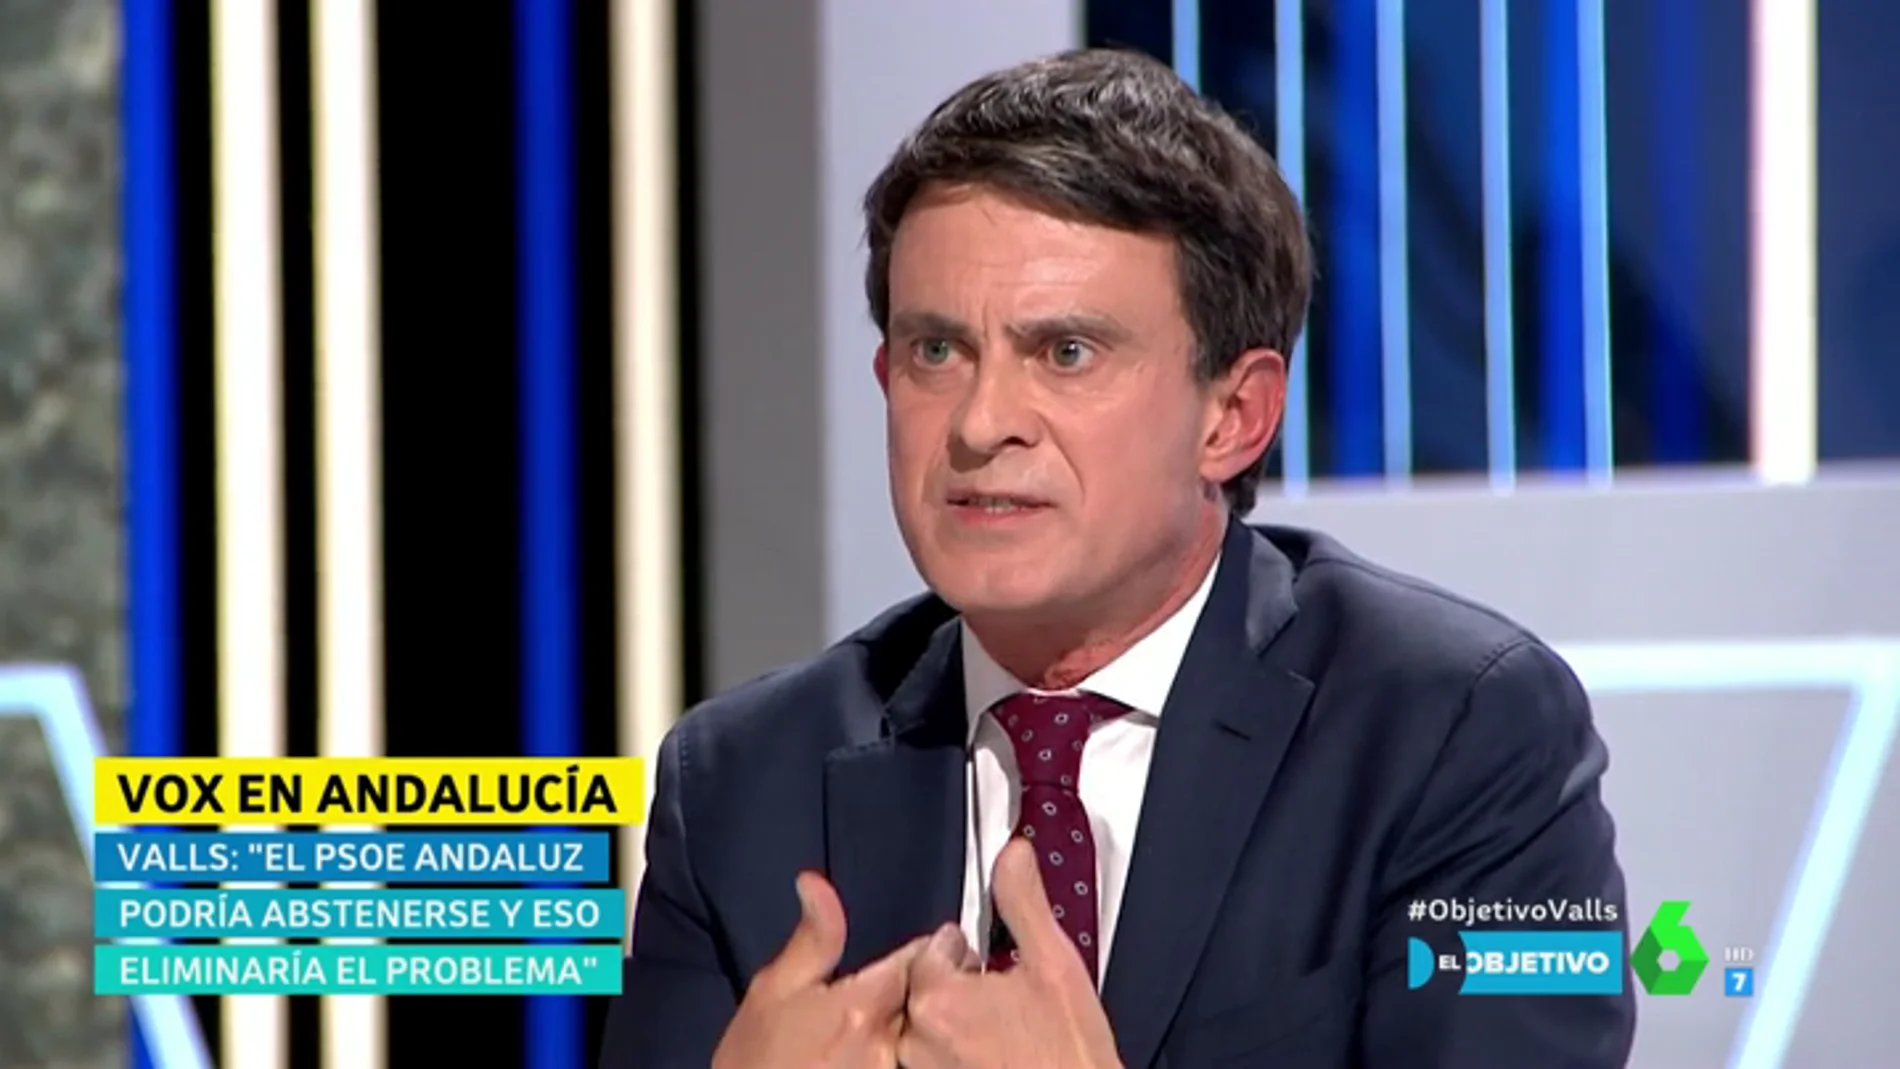 La postura de Manuel Valls sobre inmigración: "Hay que integrar cuando se pueda integrar y expulsar cuando se tiene que expulsar"